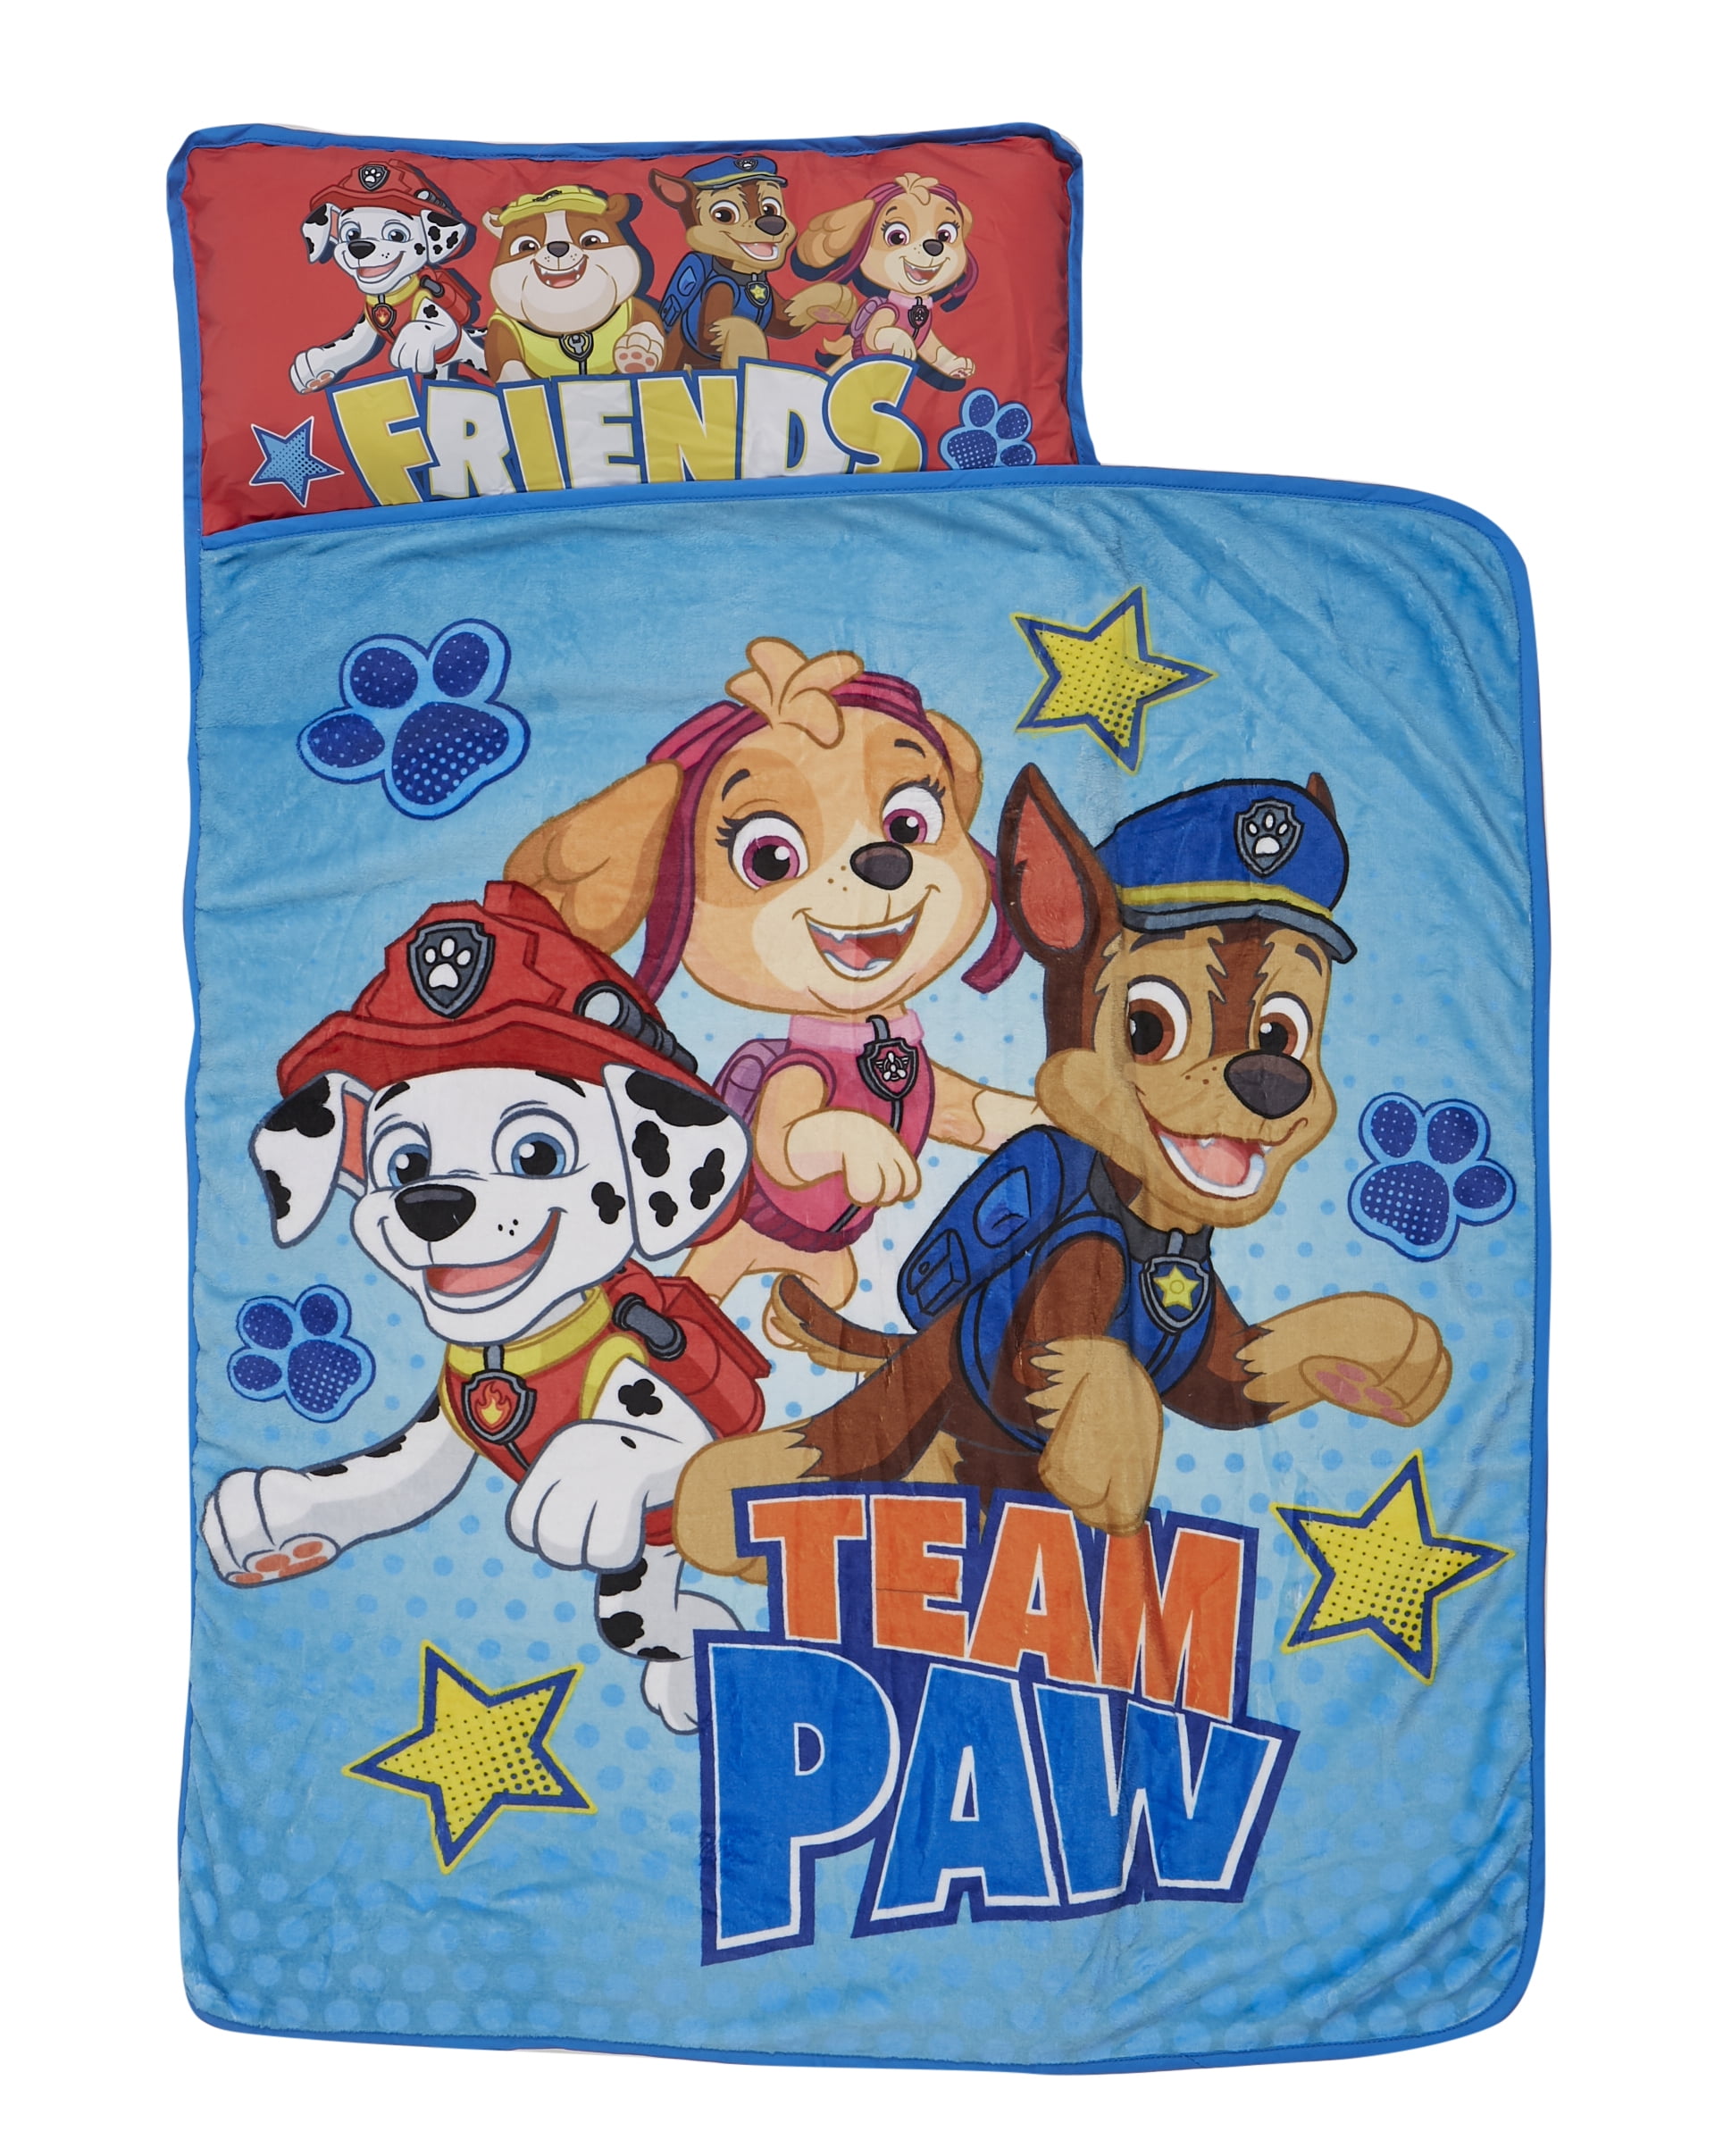 Nickelodeon Paw Patrol Rescue Toddler Nap Mat Funhouse SG_B0762BV3G4_US 